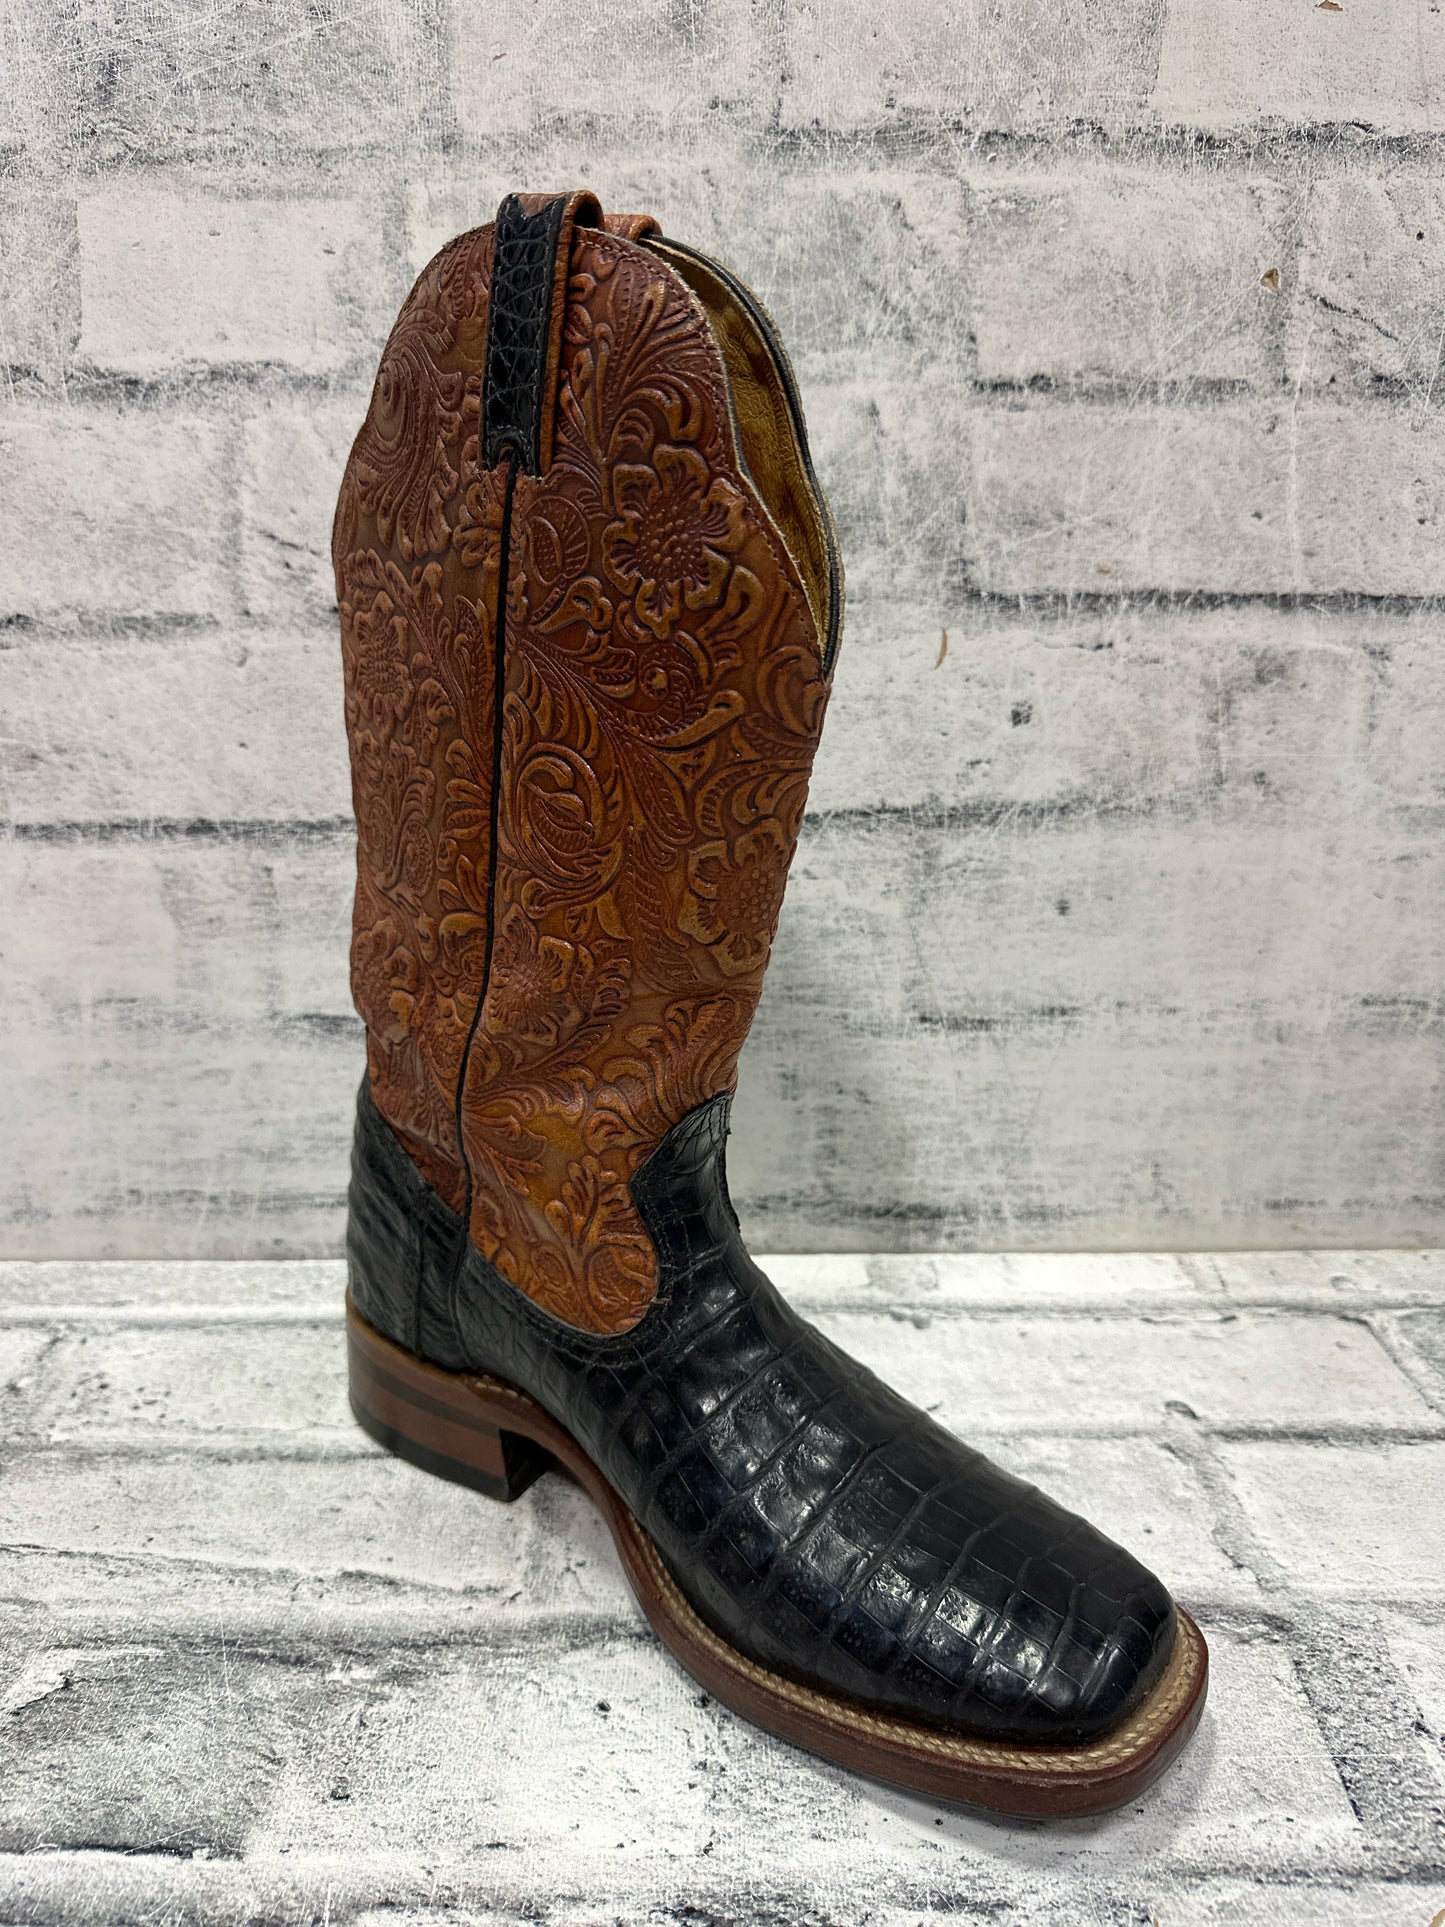 Boulet 13" Exotic Cowboy Boots Black Croc 8.5C